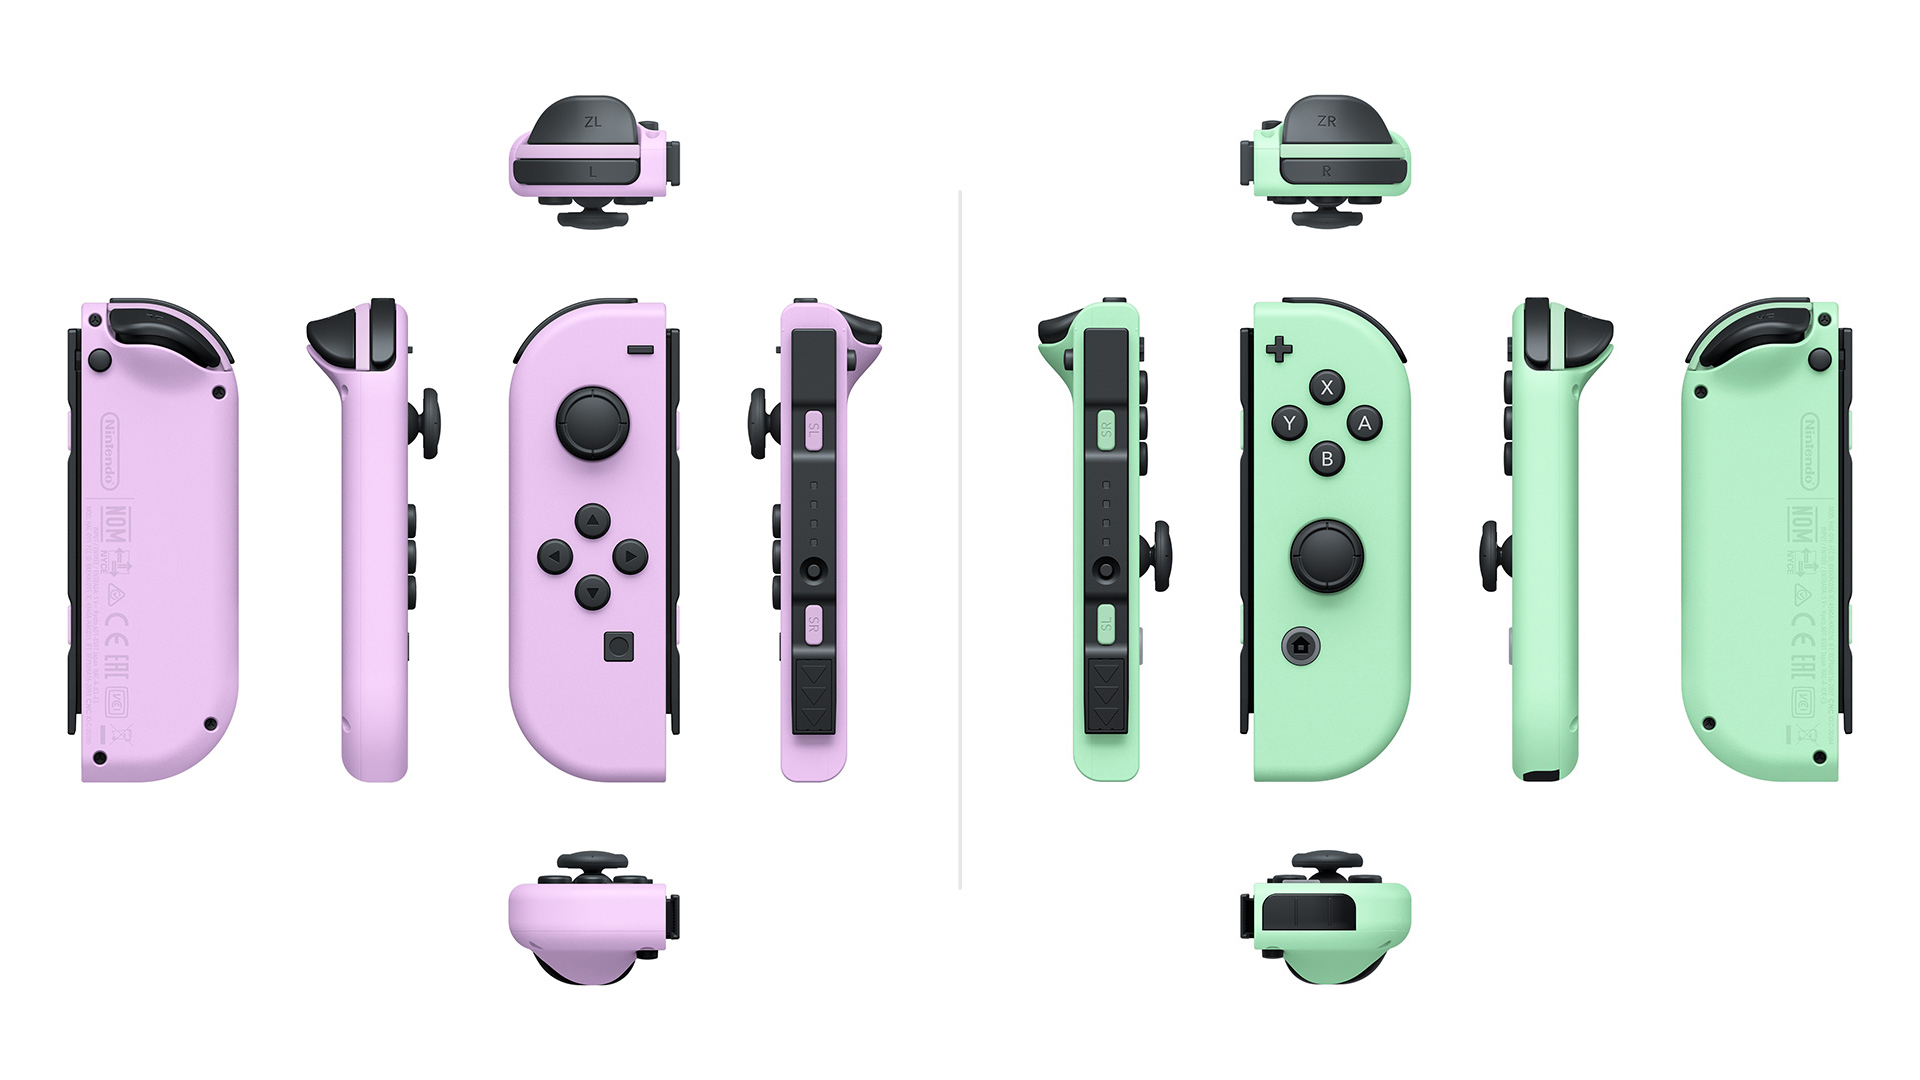 Nintendo Switch Juego de mandos Joy-Con morado pastel/verde pastel desde  66,99 €